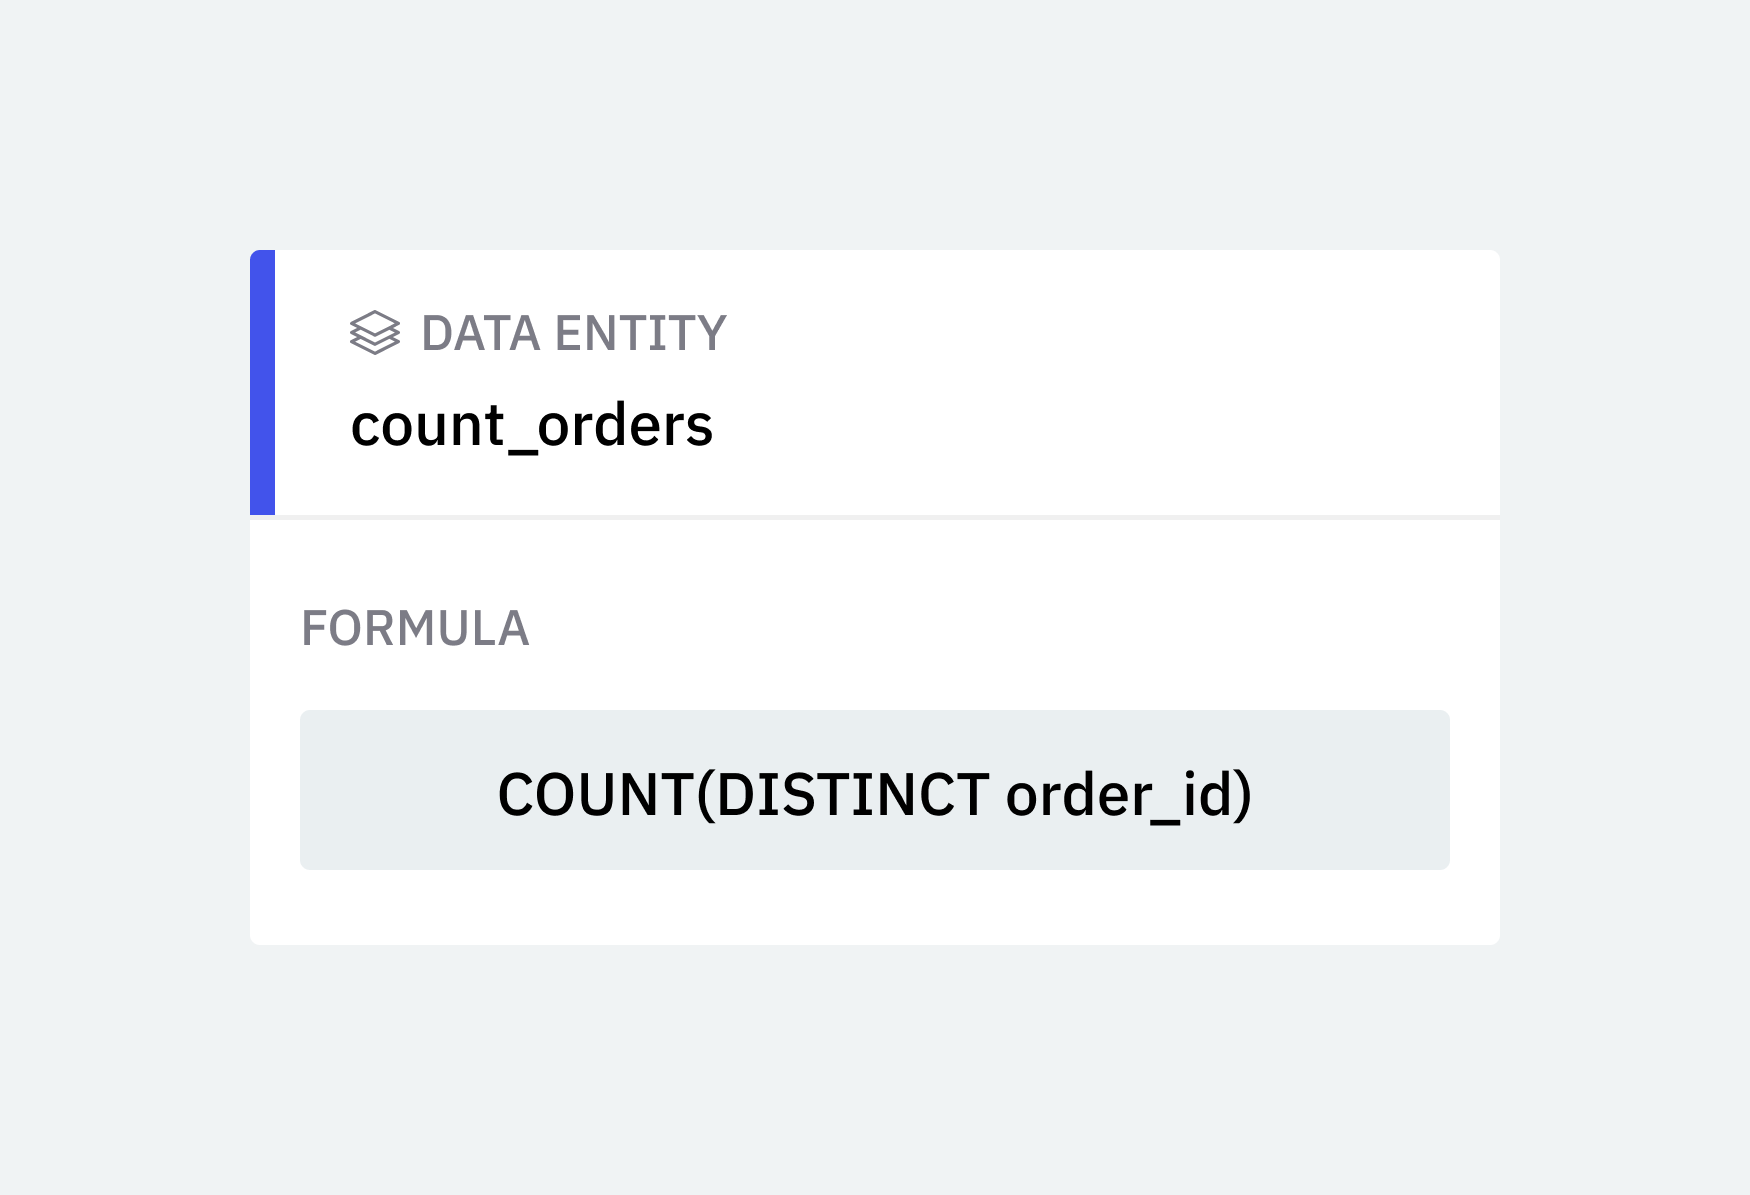 Data Entity